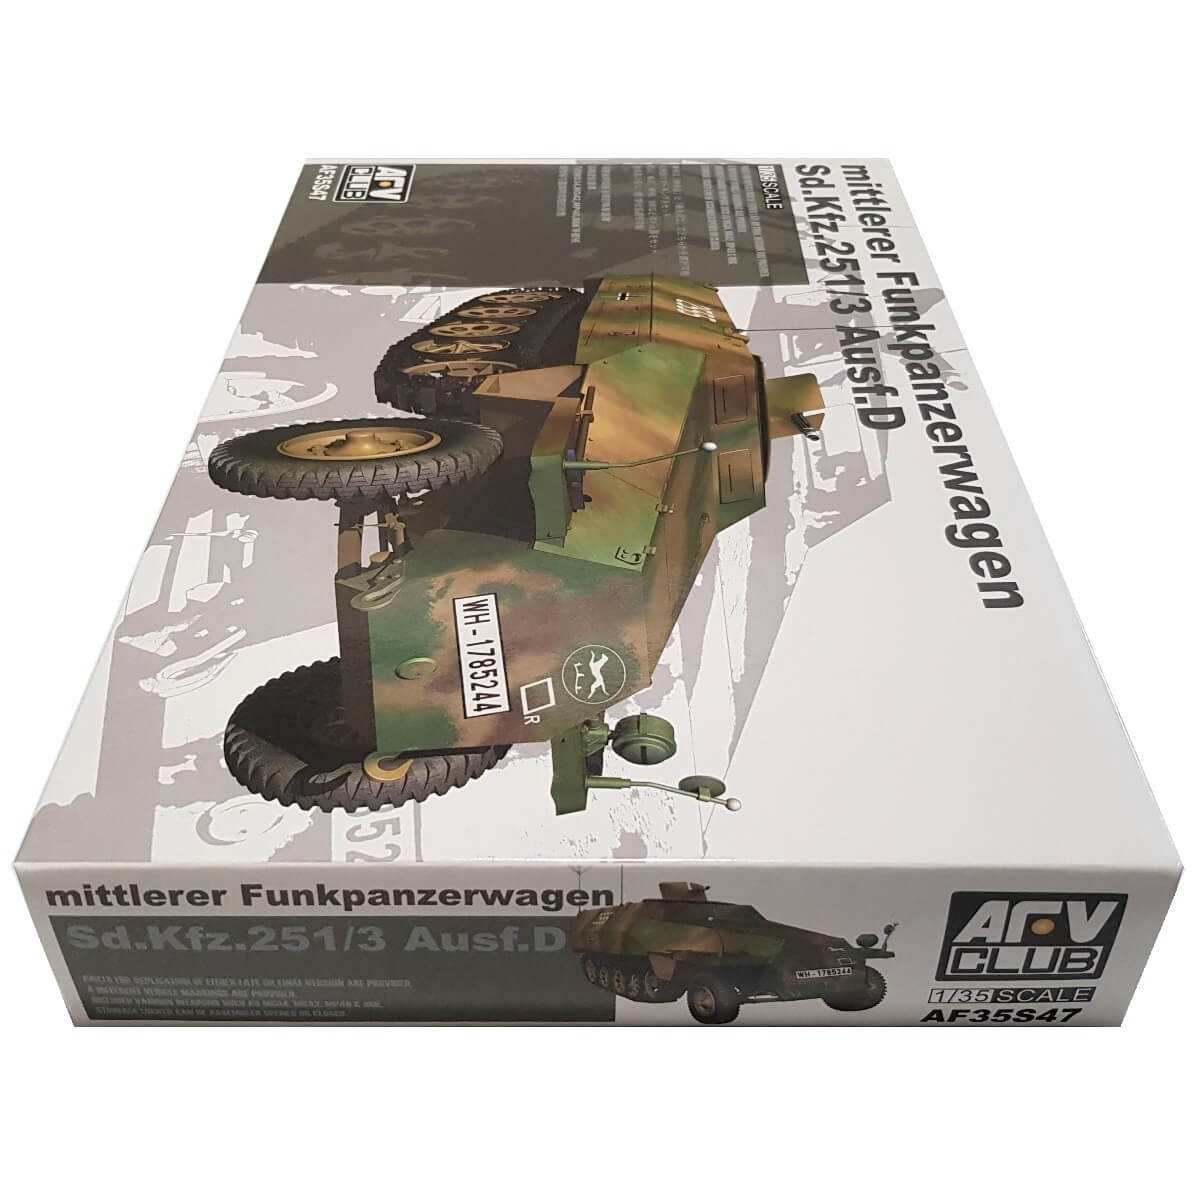 1:35 Mittlerer Funkpanzerwagen Sd.Kfz. 251/3 Ausf. D - AFV CLUB